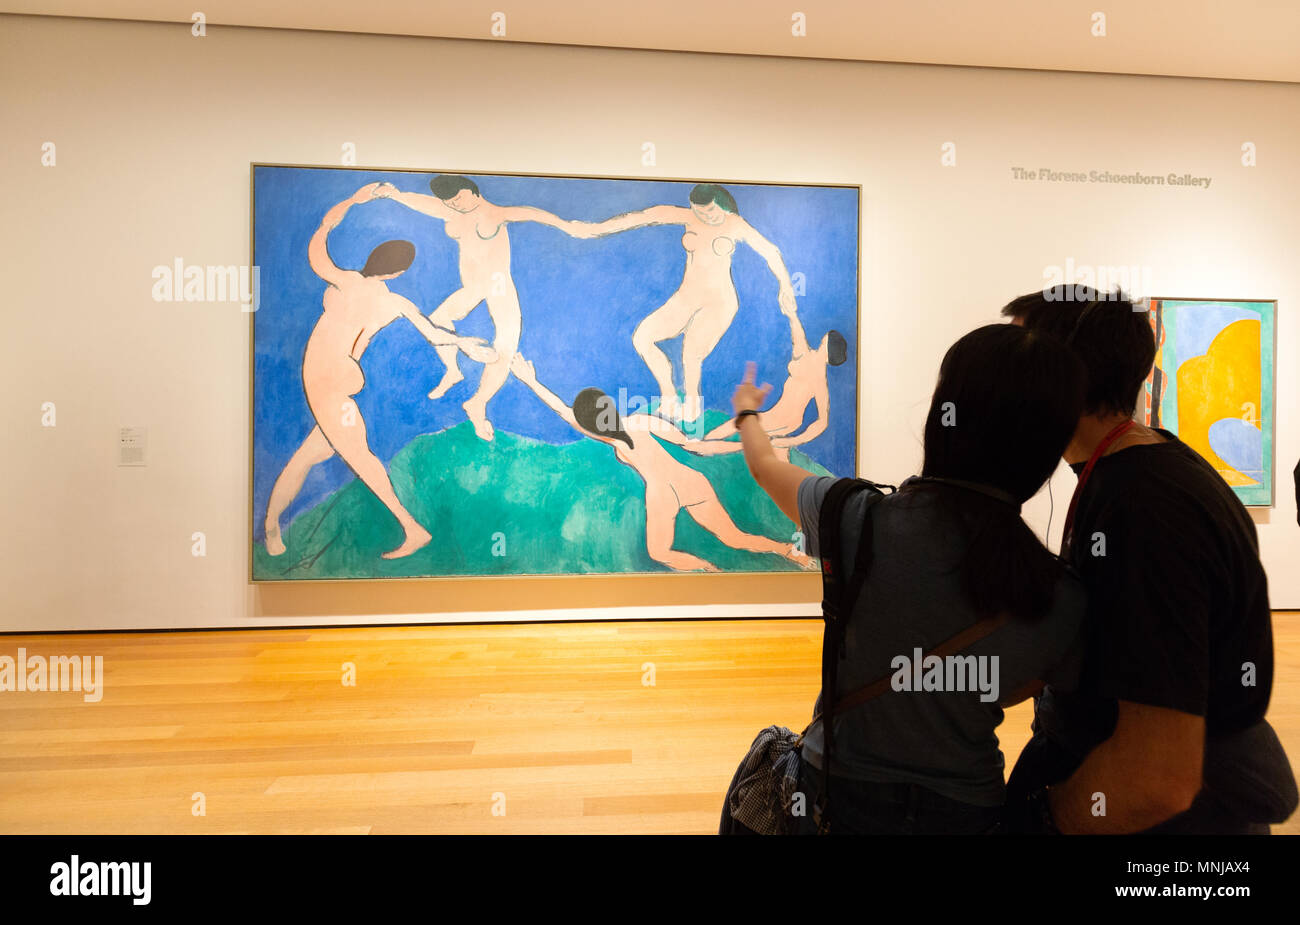 Musée Matisse; Un couple de visiteurs regardant l'art moderne - un tableau Henri Matisse, MoMA (Musée d'art moderne), New York, Etats-Unis Banque D'Images